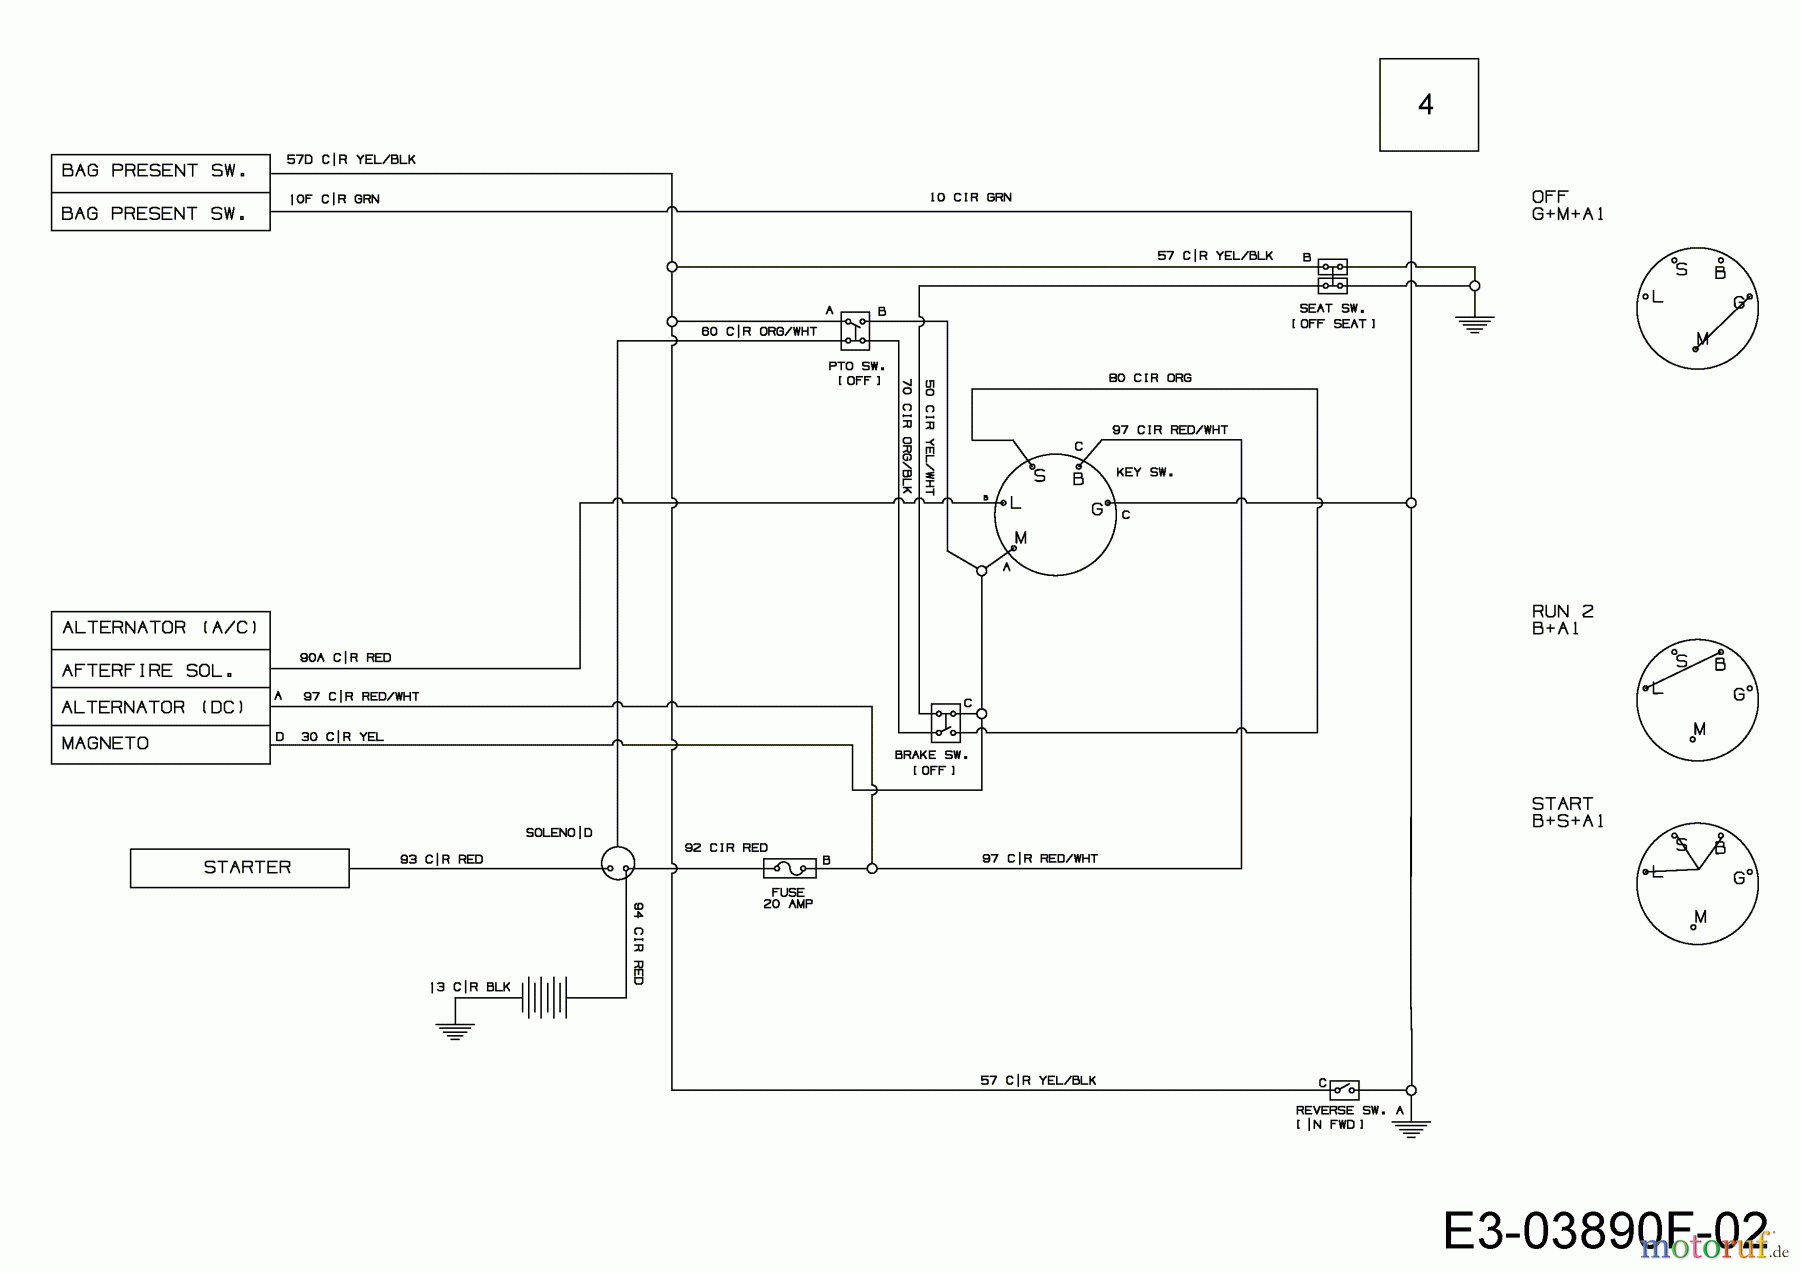  MTD Rasentraktoren DL 92 T 13I2765E677  (2018) Schaltplan